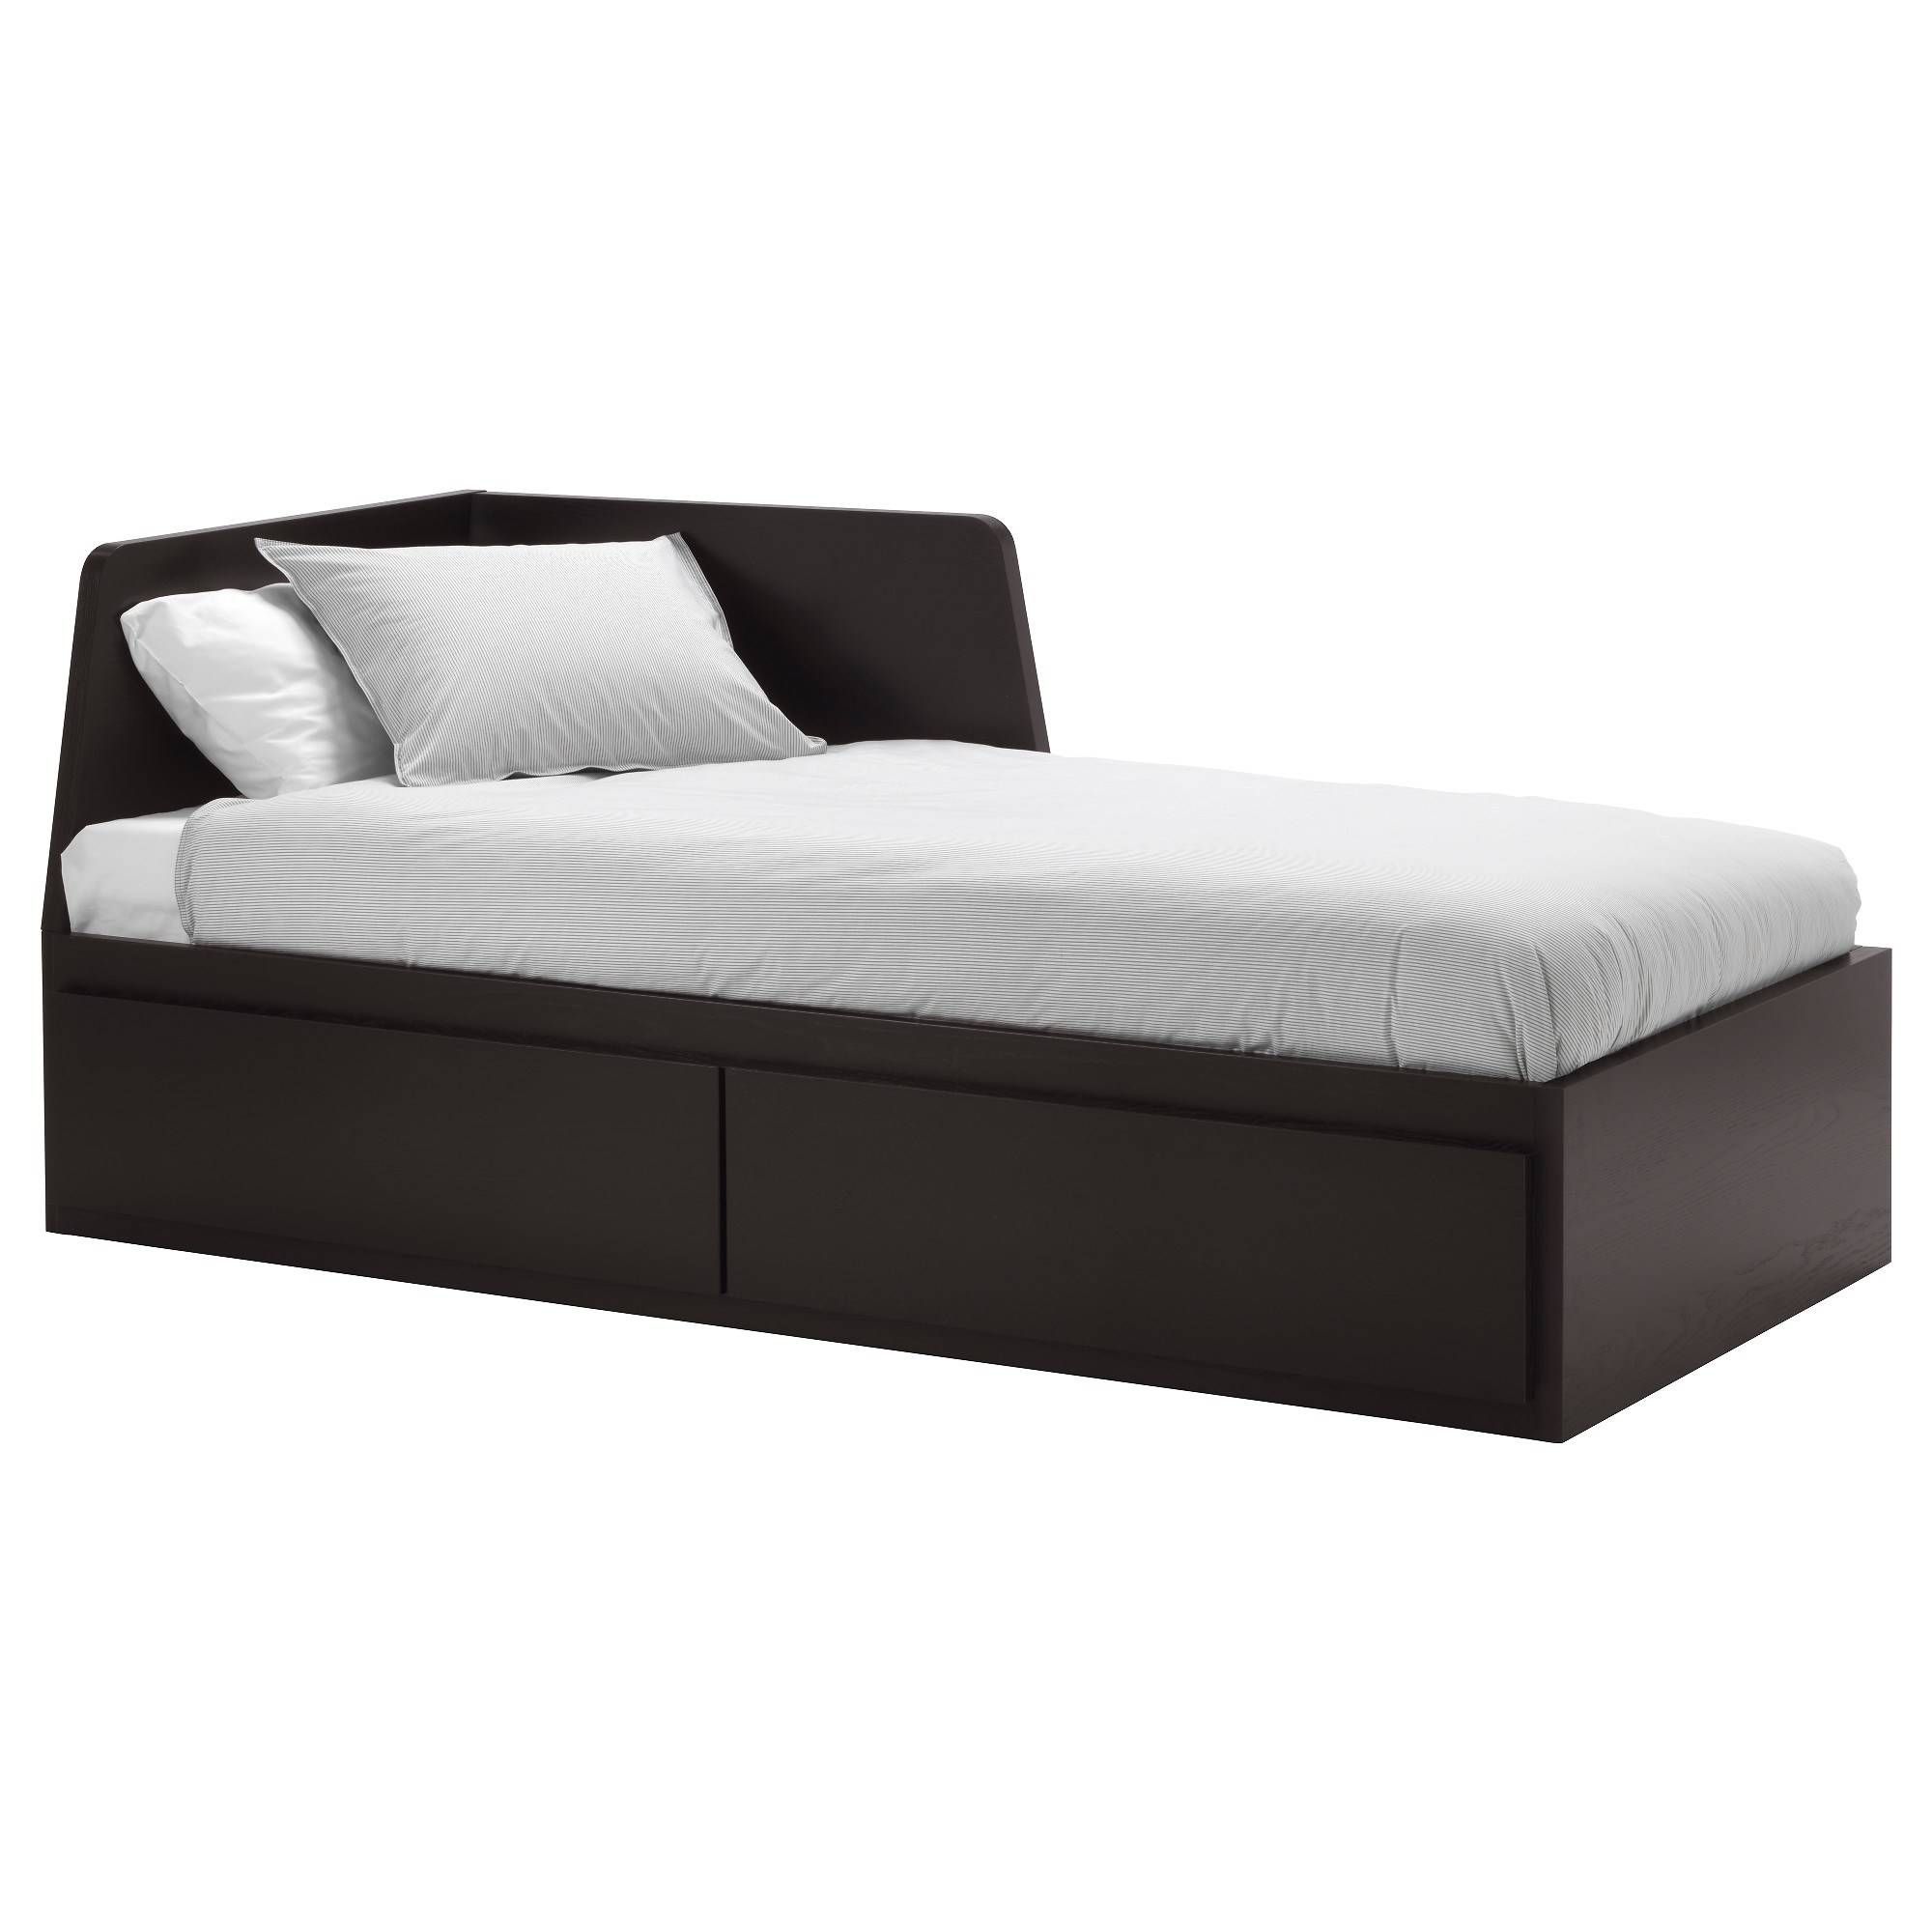 ▻ Sofa Bed : Delightful Single Sofa Bed Ikea Ikea Single Cool With Regard To Ikea Single Sofa Beds (View 26 of 30)